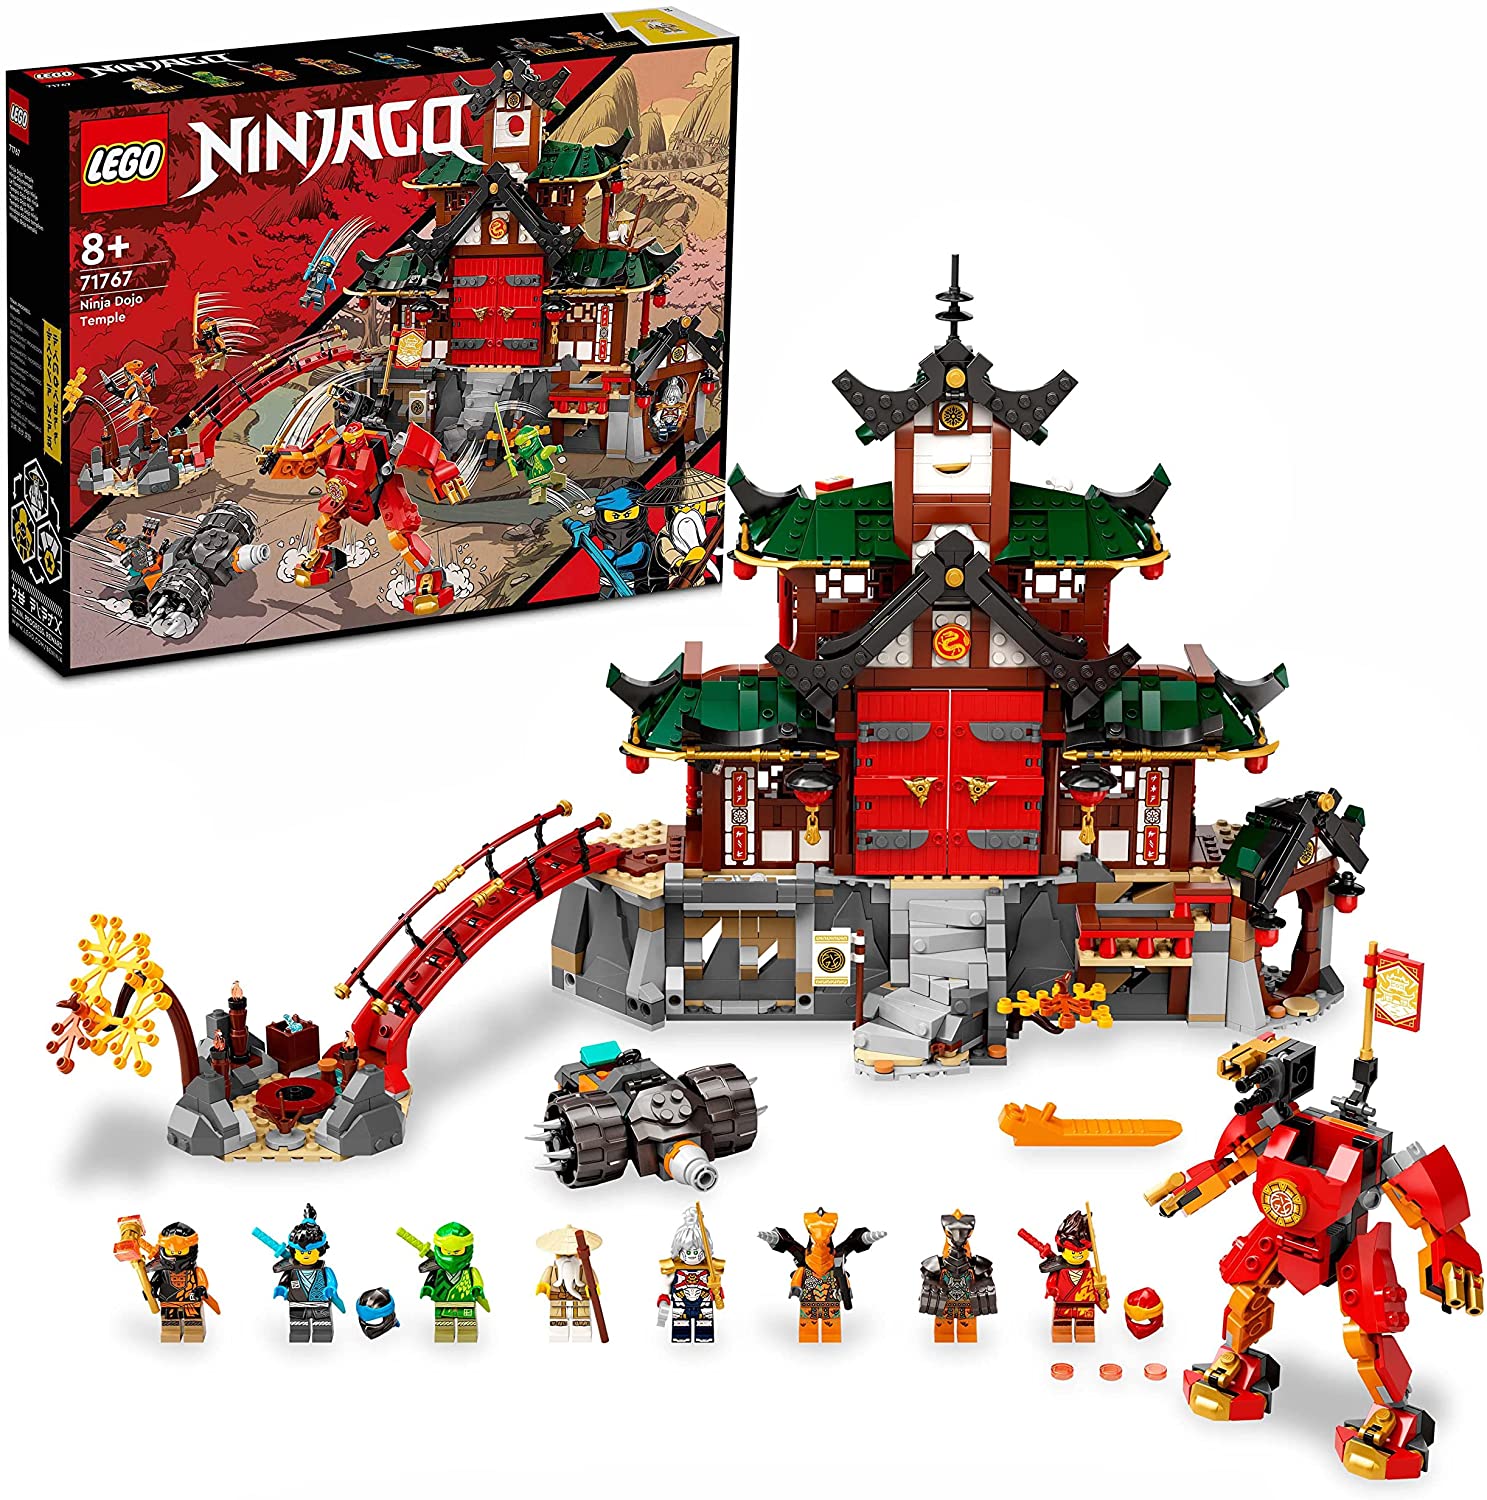 LEGO 71767 NINJAGO Ninja-Dojotempel Meister des Spinjitzu, Gebäude-Set mit 